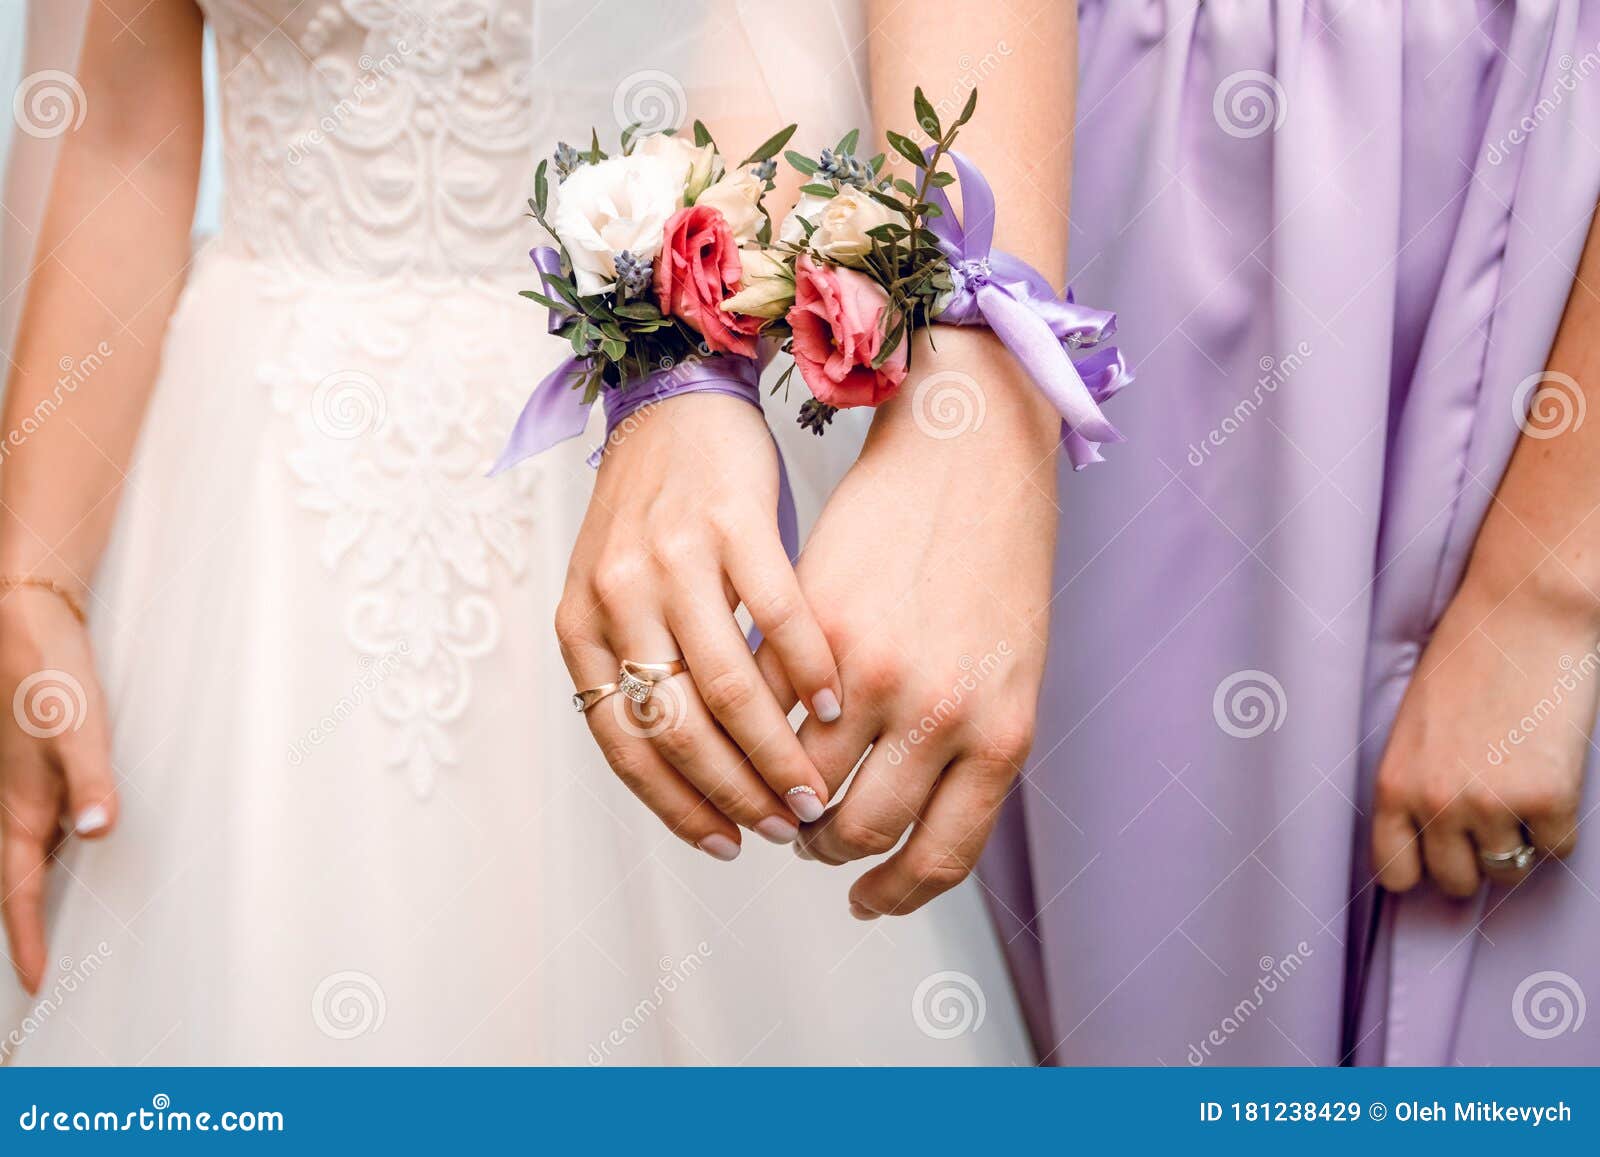 Как оформить свадьбу своими руками? Советы и идеи